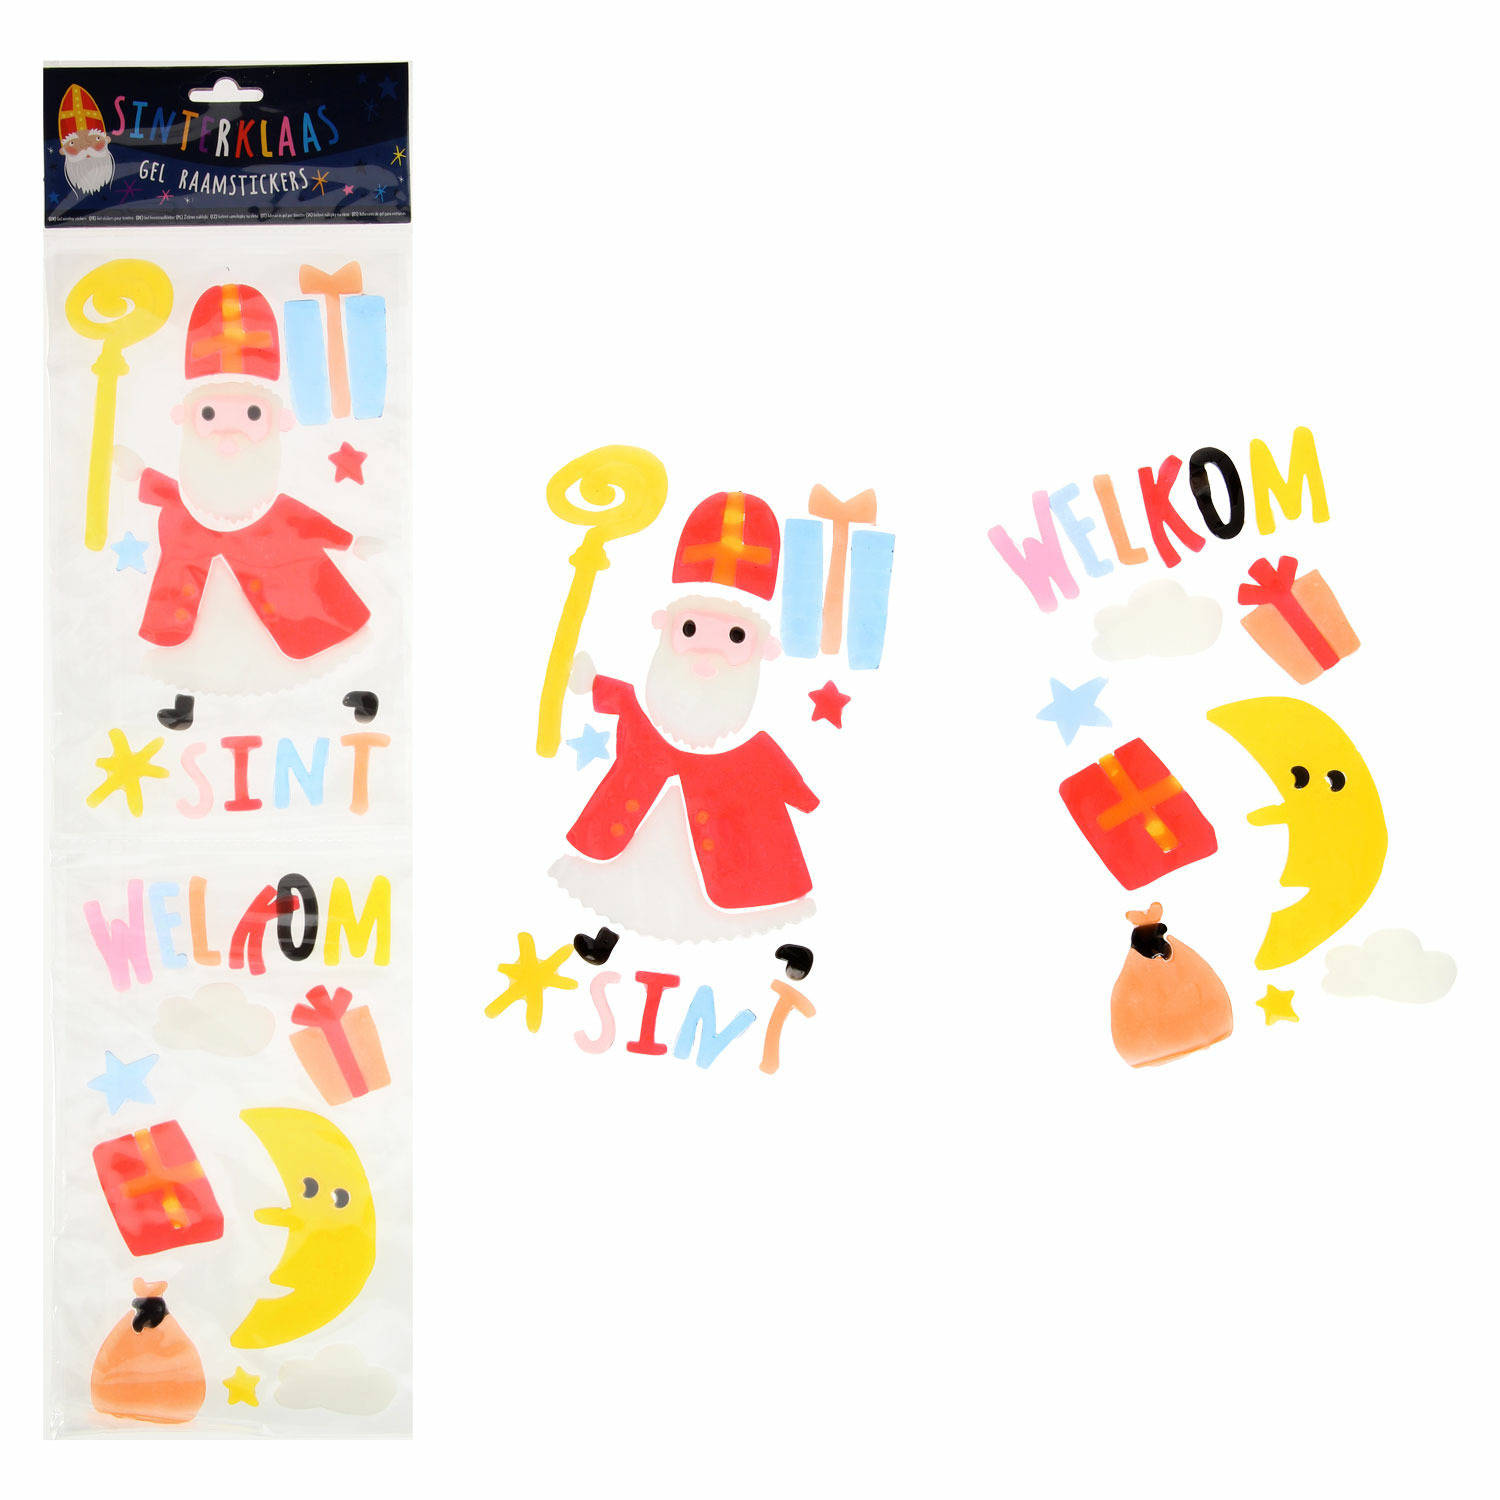 Sinterklaas raamstickers - 4 verschillende ontwerpen - voor kinderen - Raamstickers